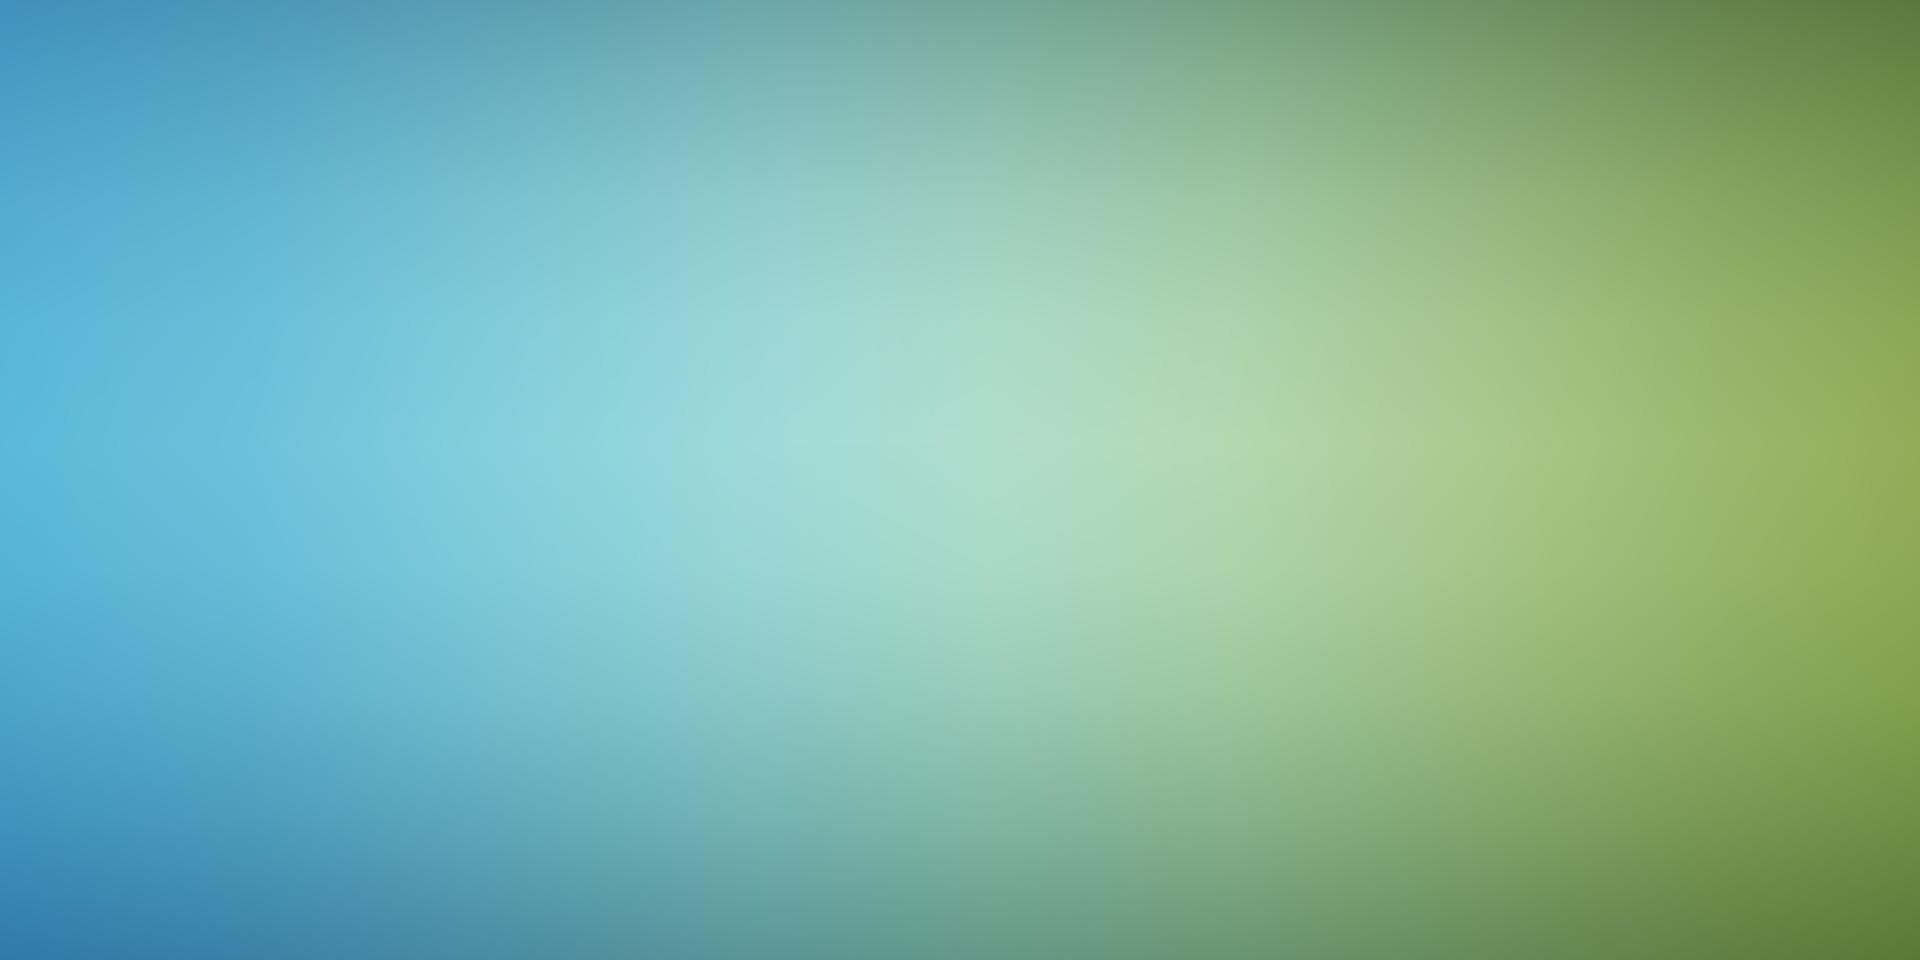 Light Blue, Green vector smart blurred texture.